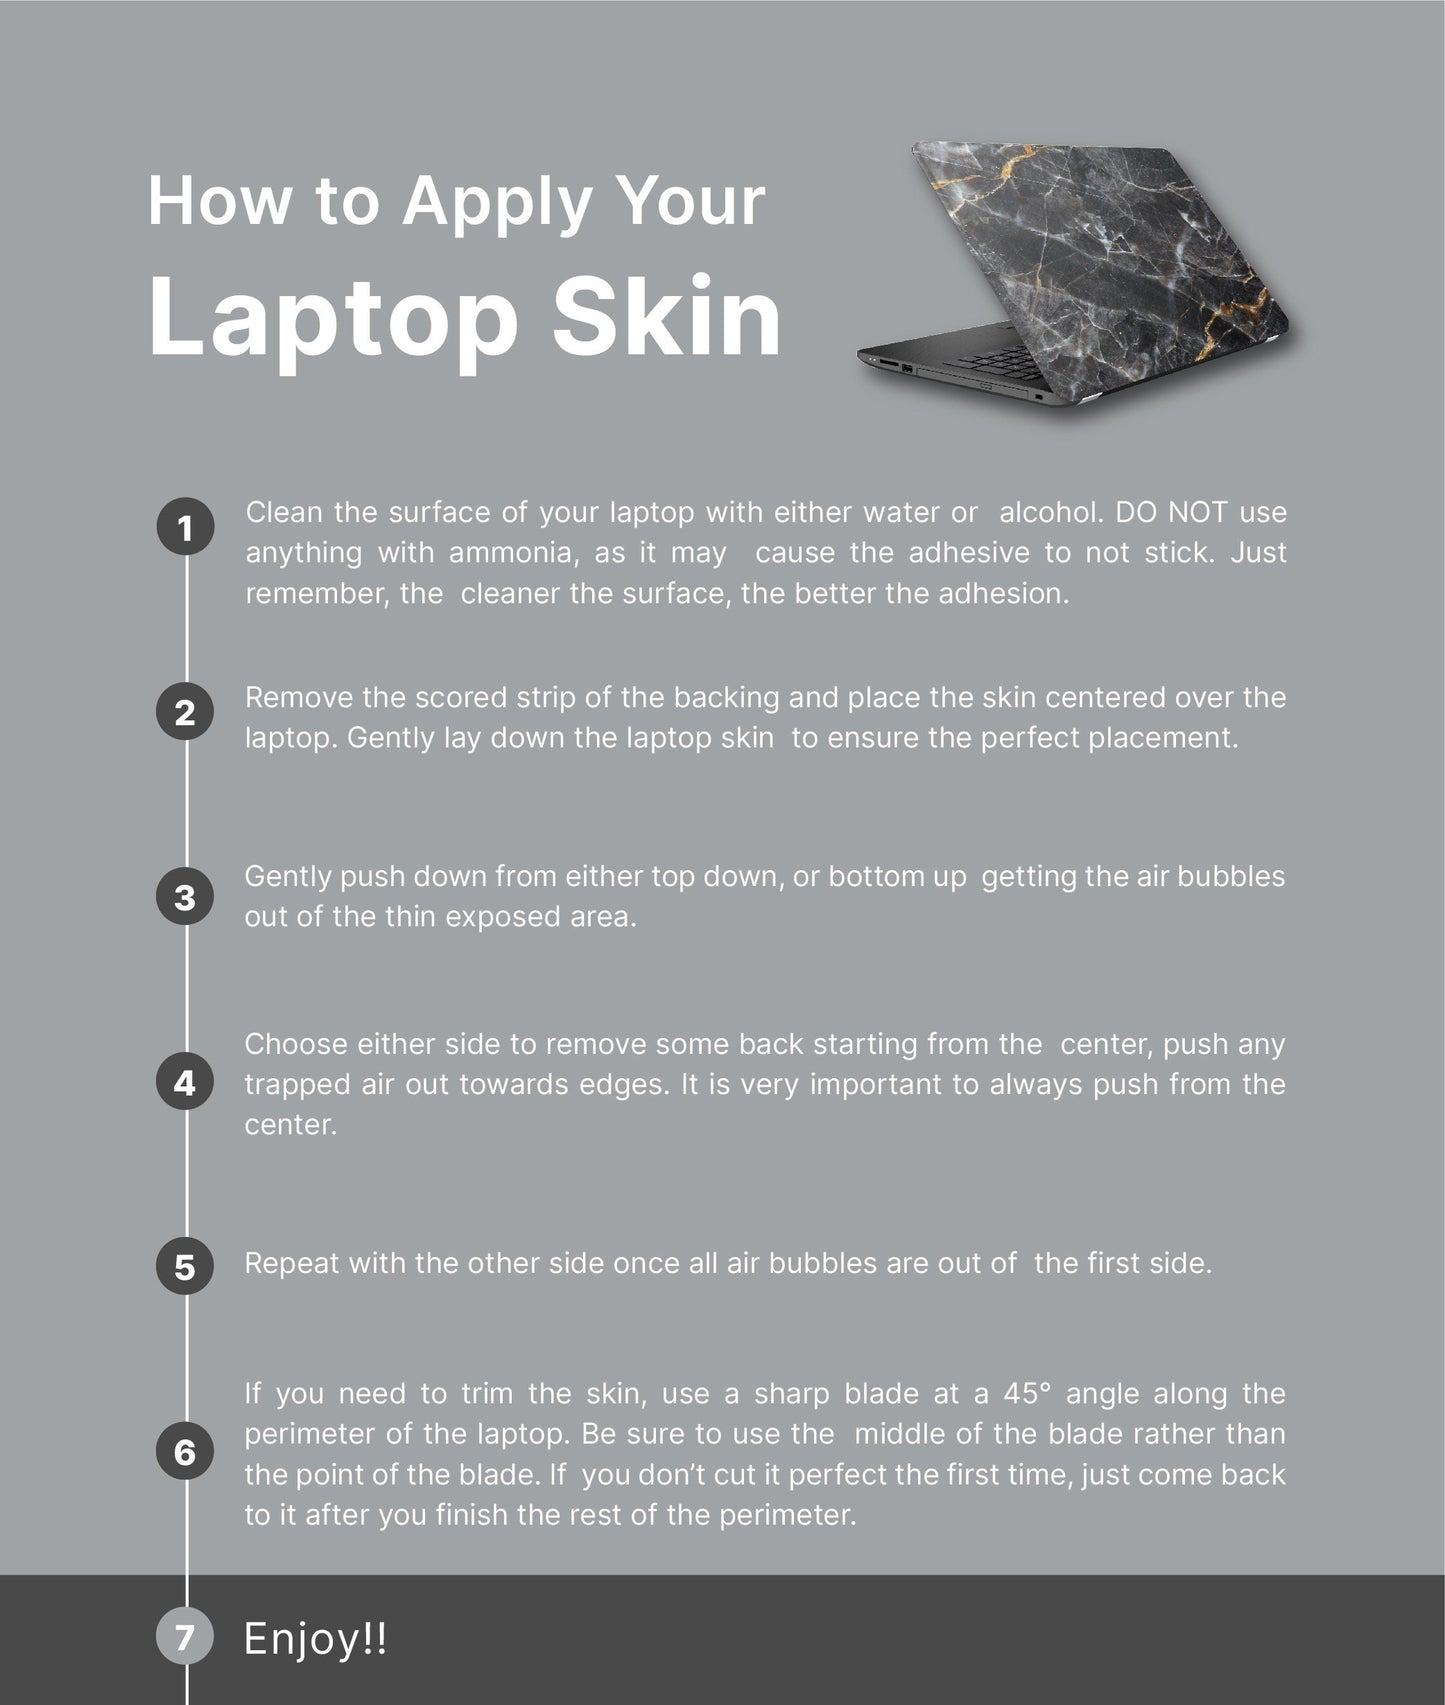 Abstract Desert Laptop Skin, Laptop Cover, Laptop Skins, Removable Laptop Skins, Laptop Decal, Customized Laptop Skin, Laptop Stickers 172